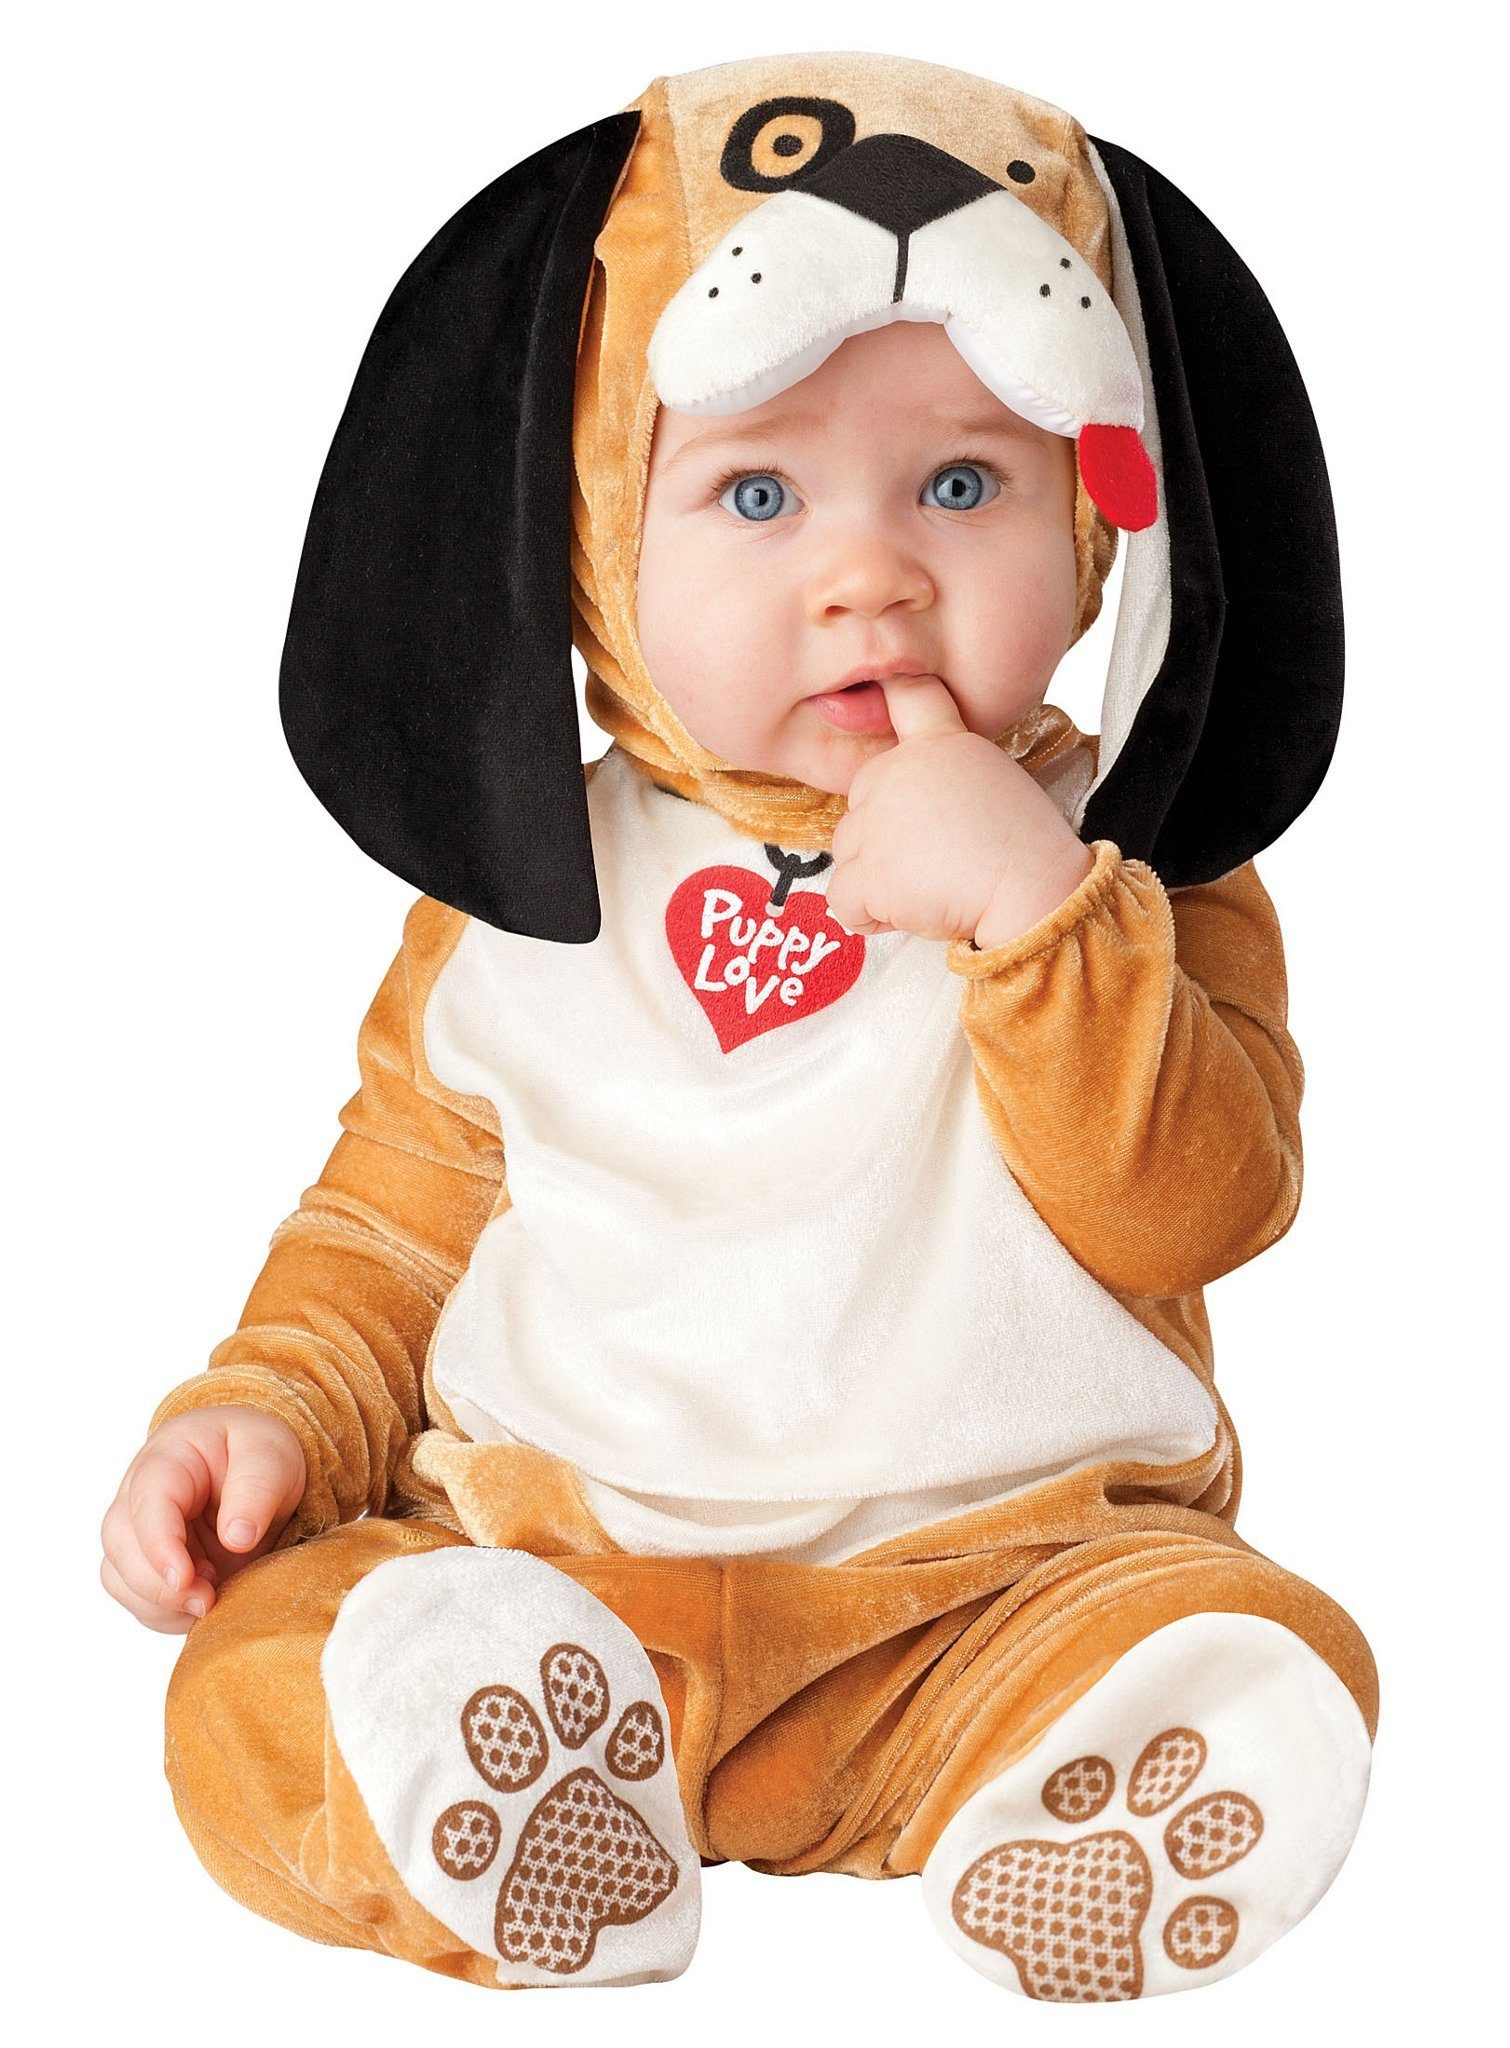 In Character Kostüm Bello, Tierisch niedliche Verkleidung für Kleinkinder